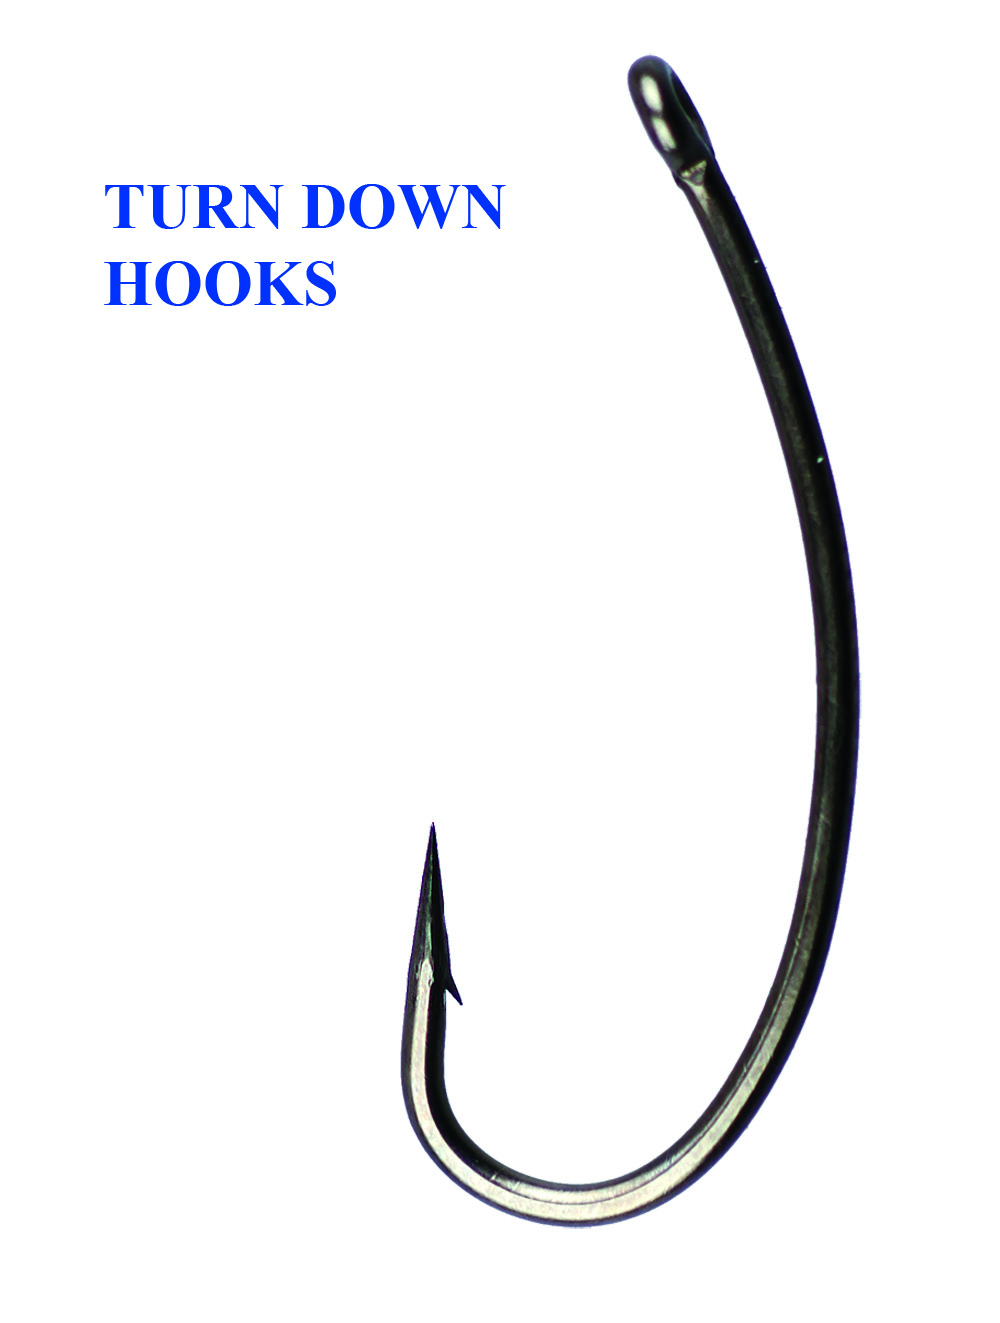 Turn down hook